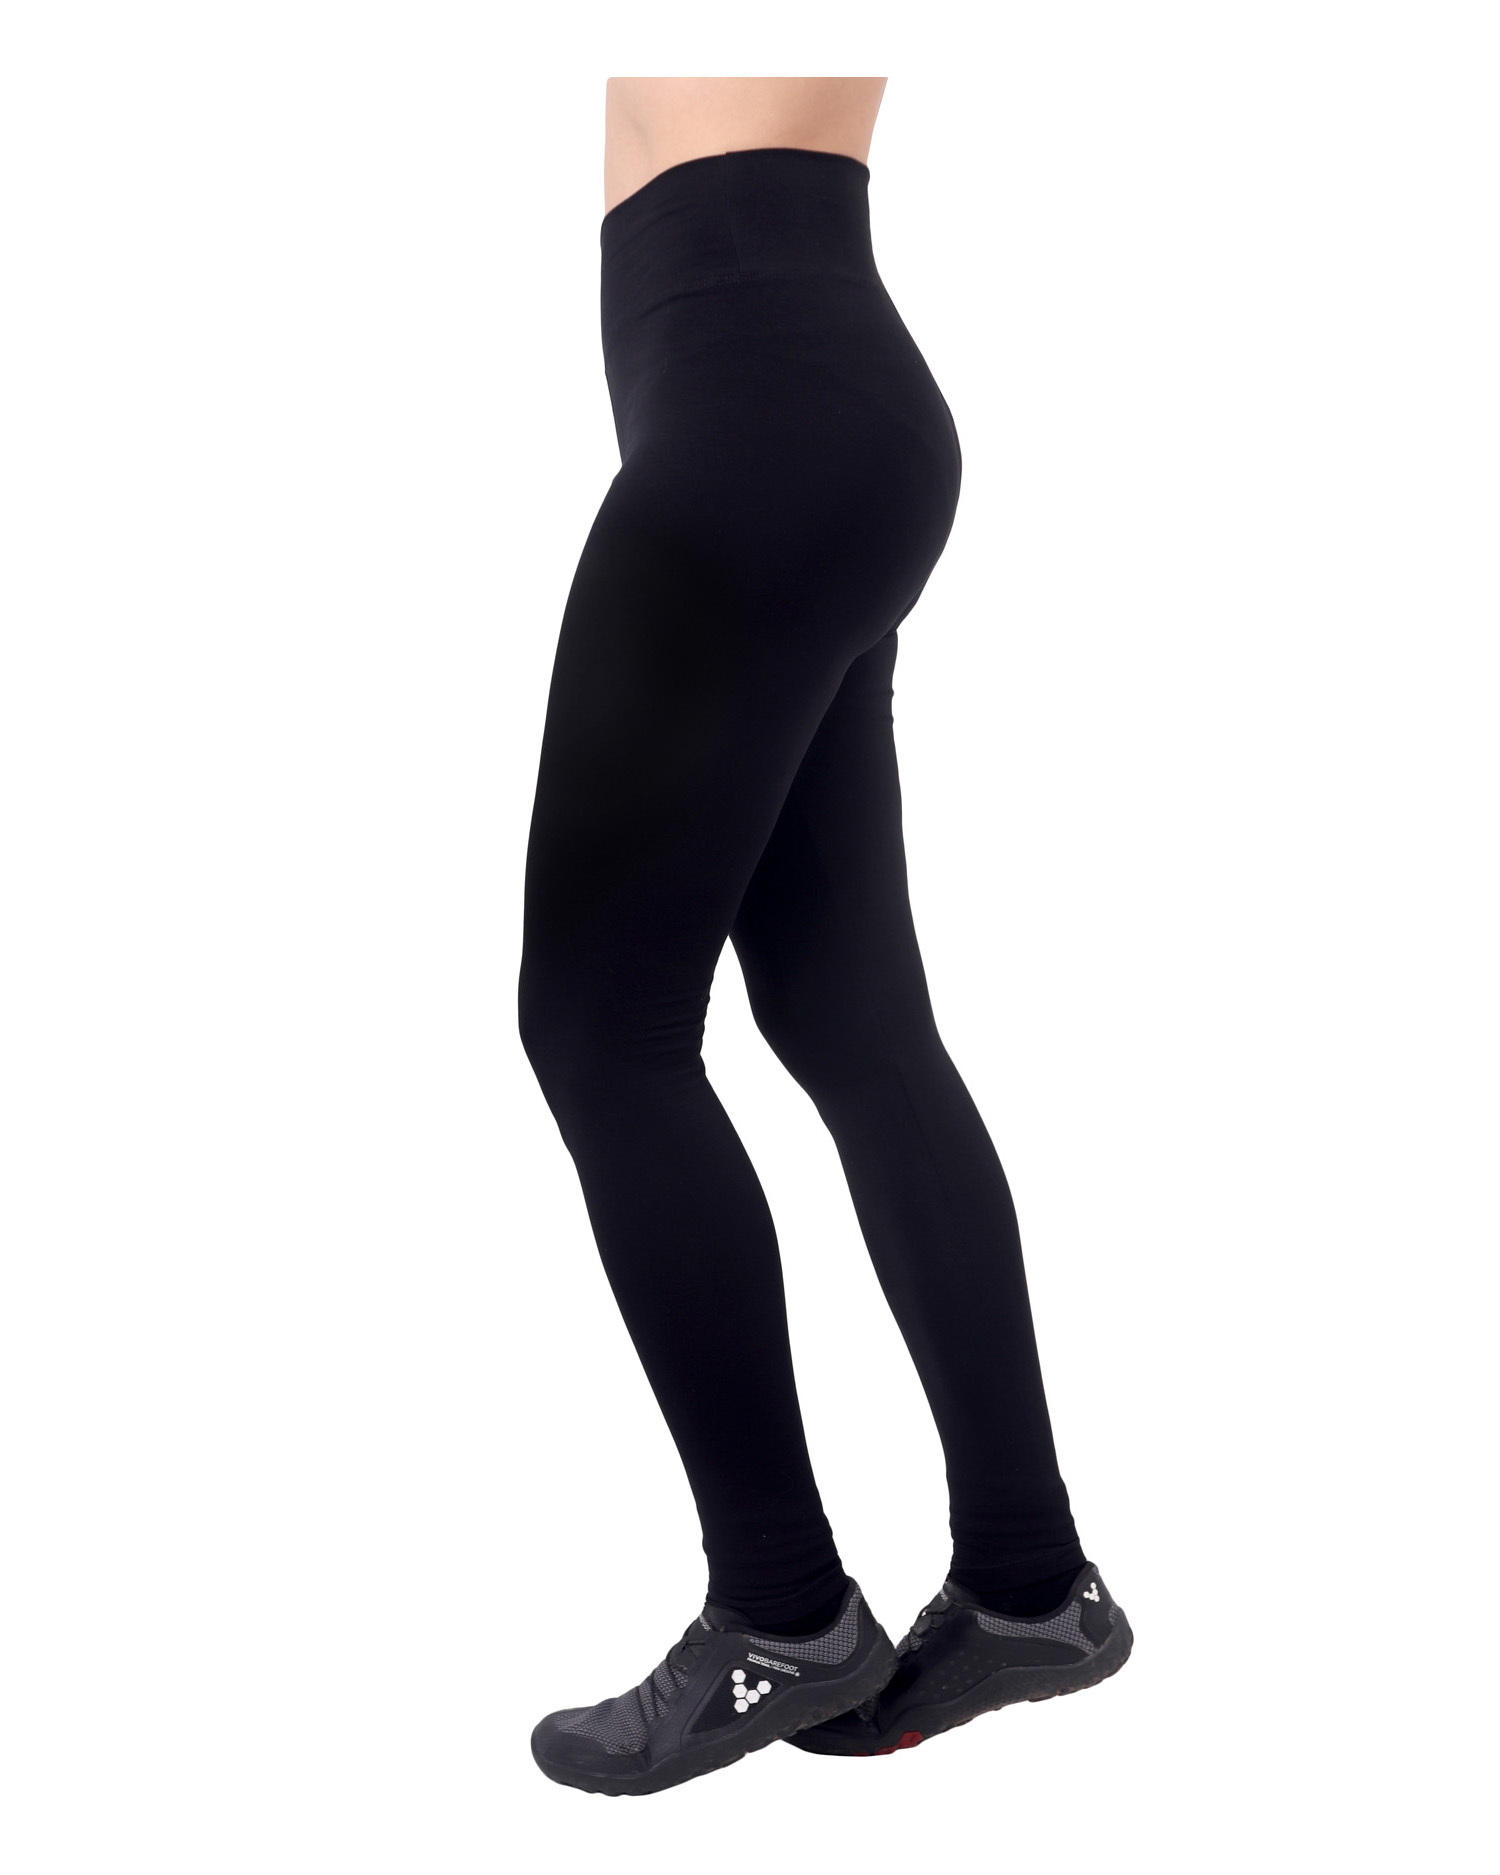 Damen-Leggings aus Baumwolle, hohe Taille, OHNE GUMMI, schwarz